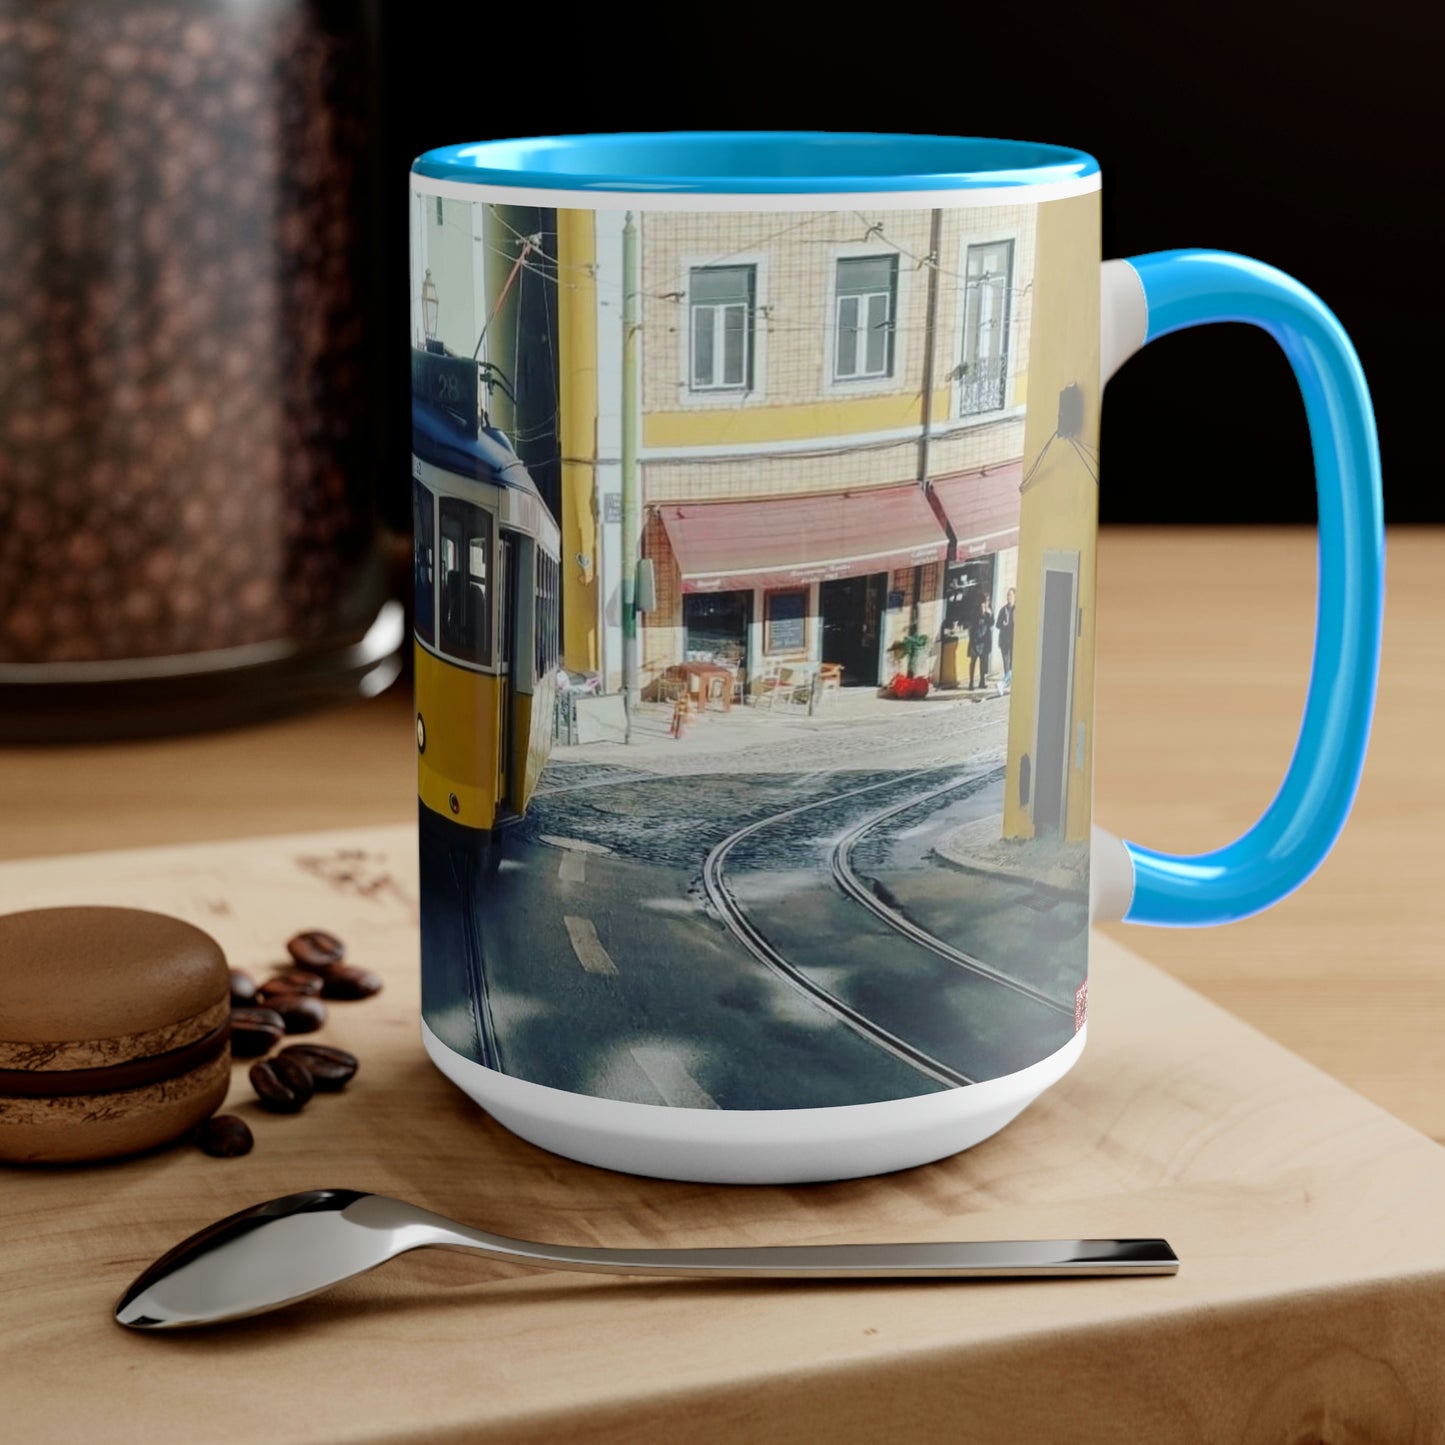 Remodelado Tram | Portugal | Two-Tone Coffee Mugs, 15oz